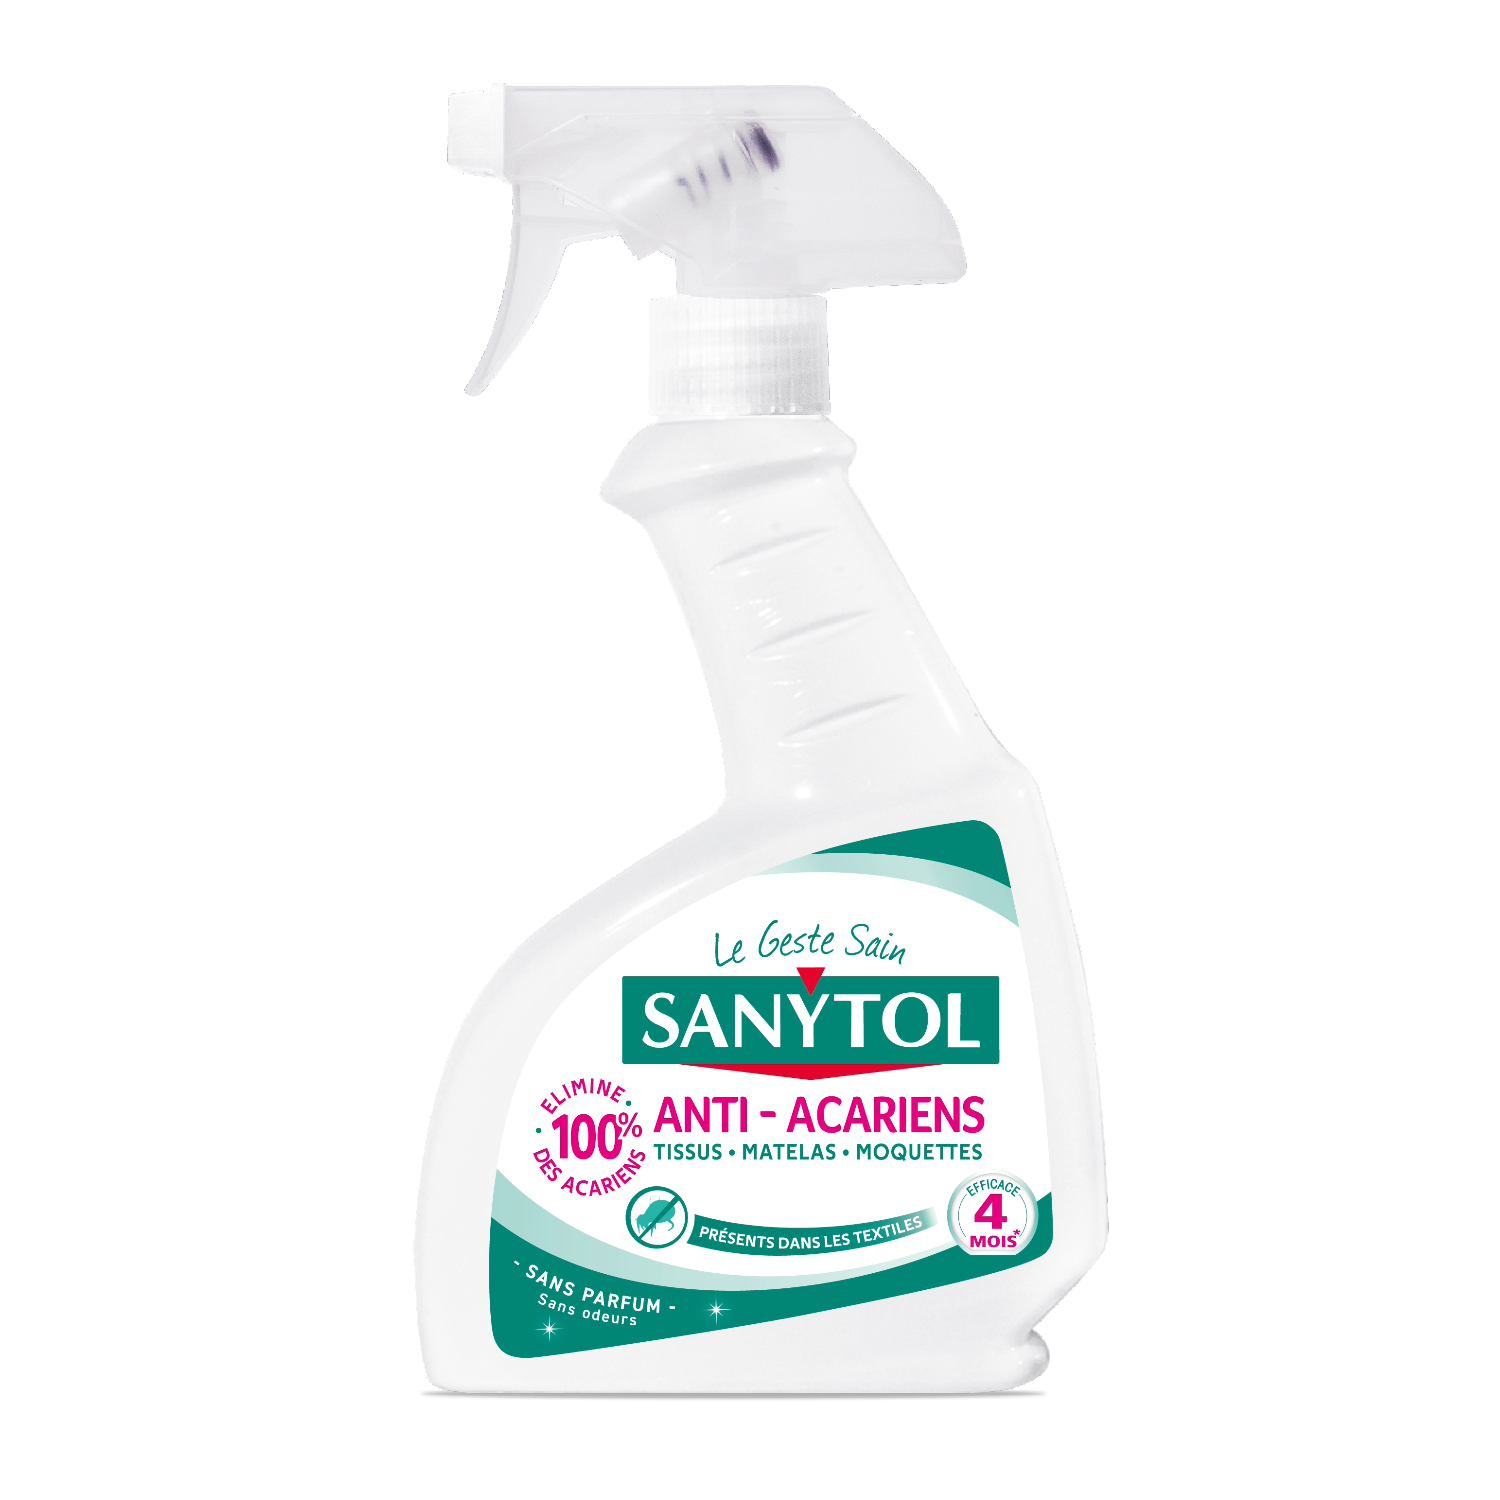 Sanytol – Desinfectante Hogar y Tejidos, Elimina Bacterias, Virus y Hongos  Sin Lejía, flor de algodon - Pack de 6 x 300 ML = 1,8L